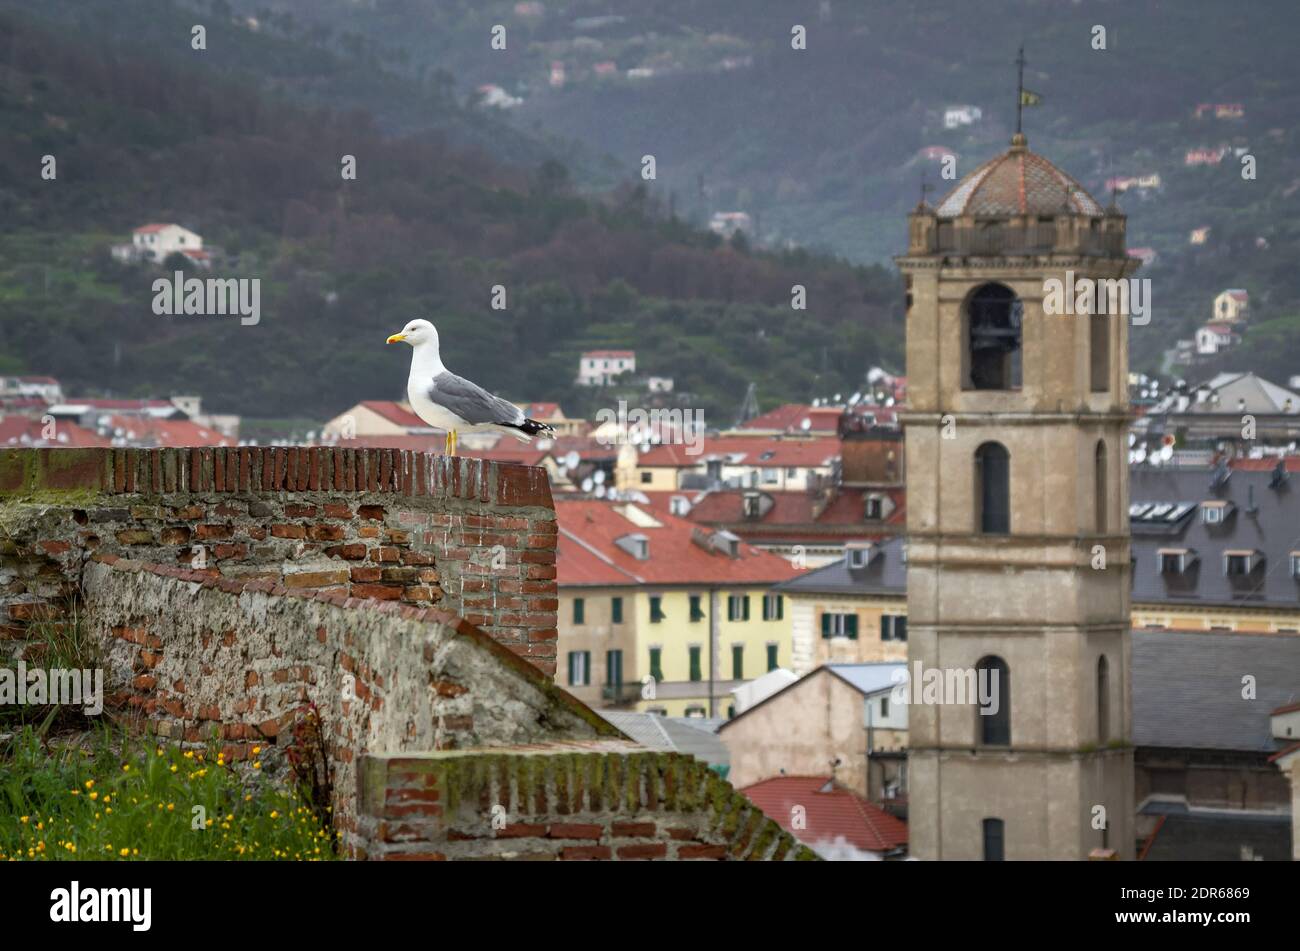 Un moulus sur un mur de la forteresse de Priamar avec une vue floue de Savona en arrière-plan, l'Italie. Banque D'Images